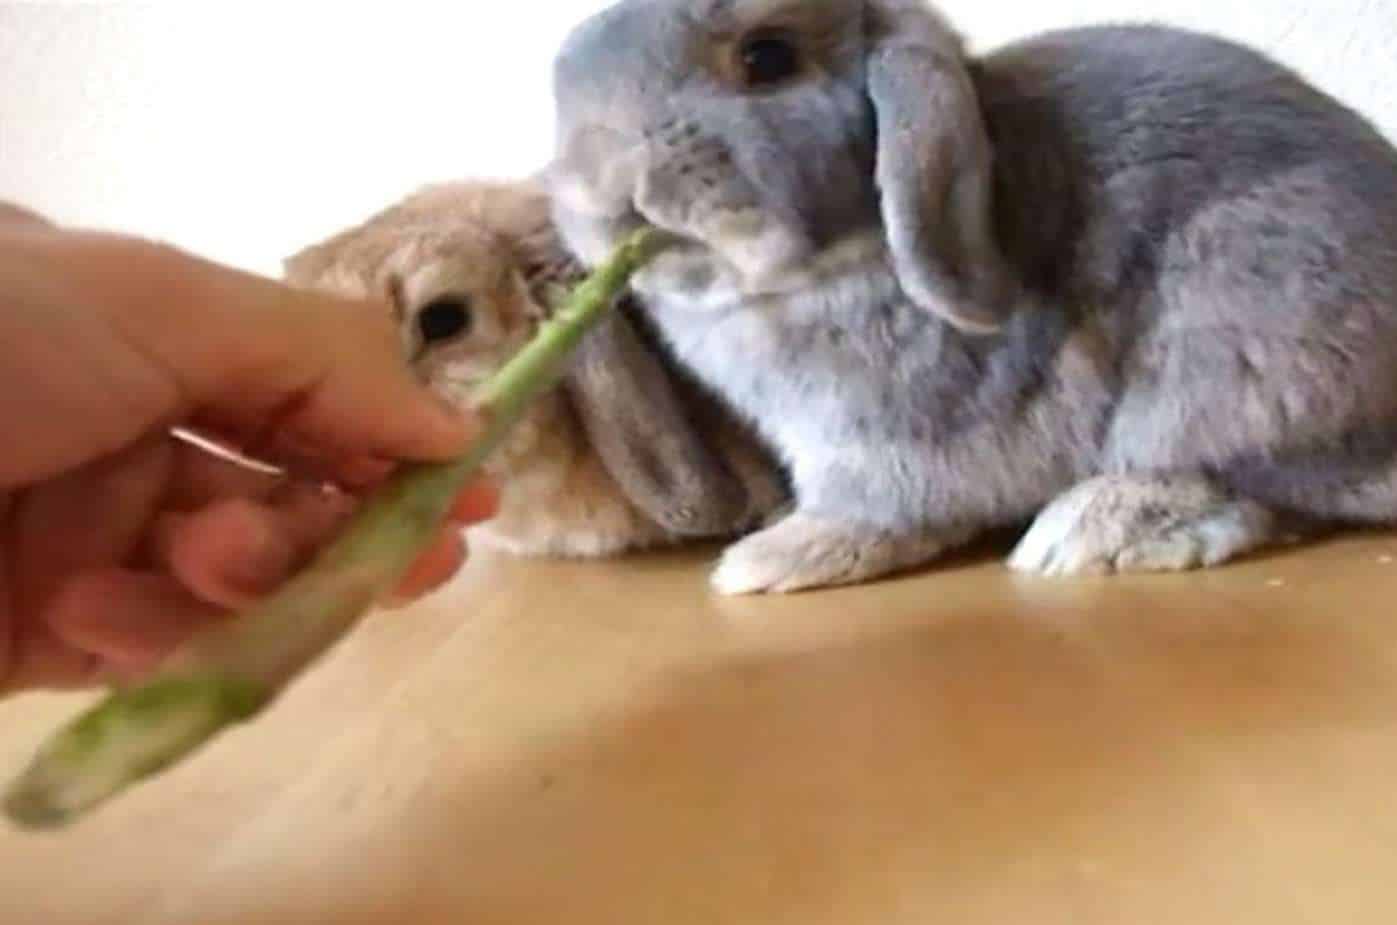 Feeding your rabbit with asparagus